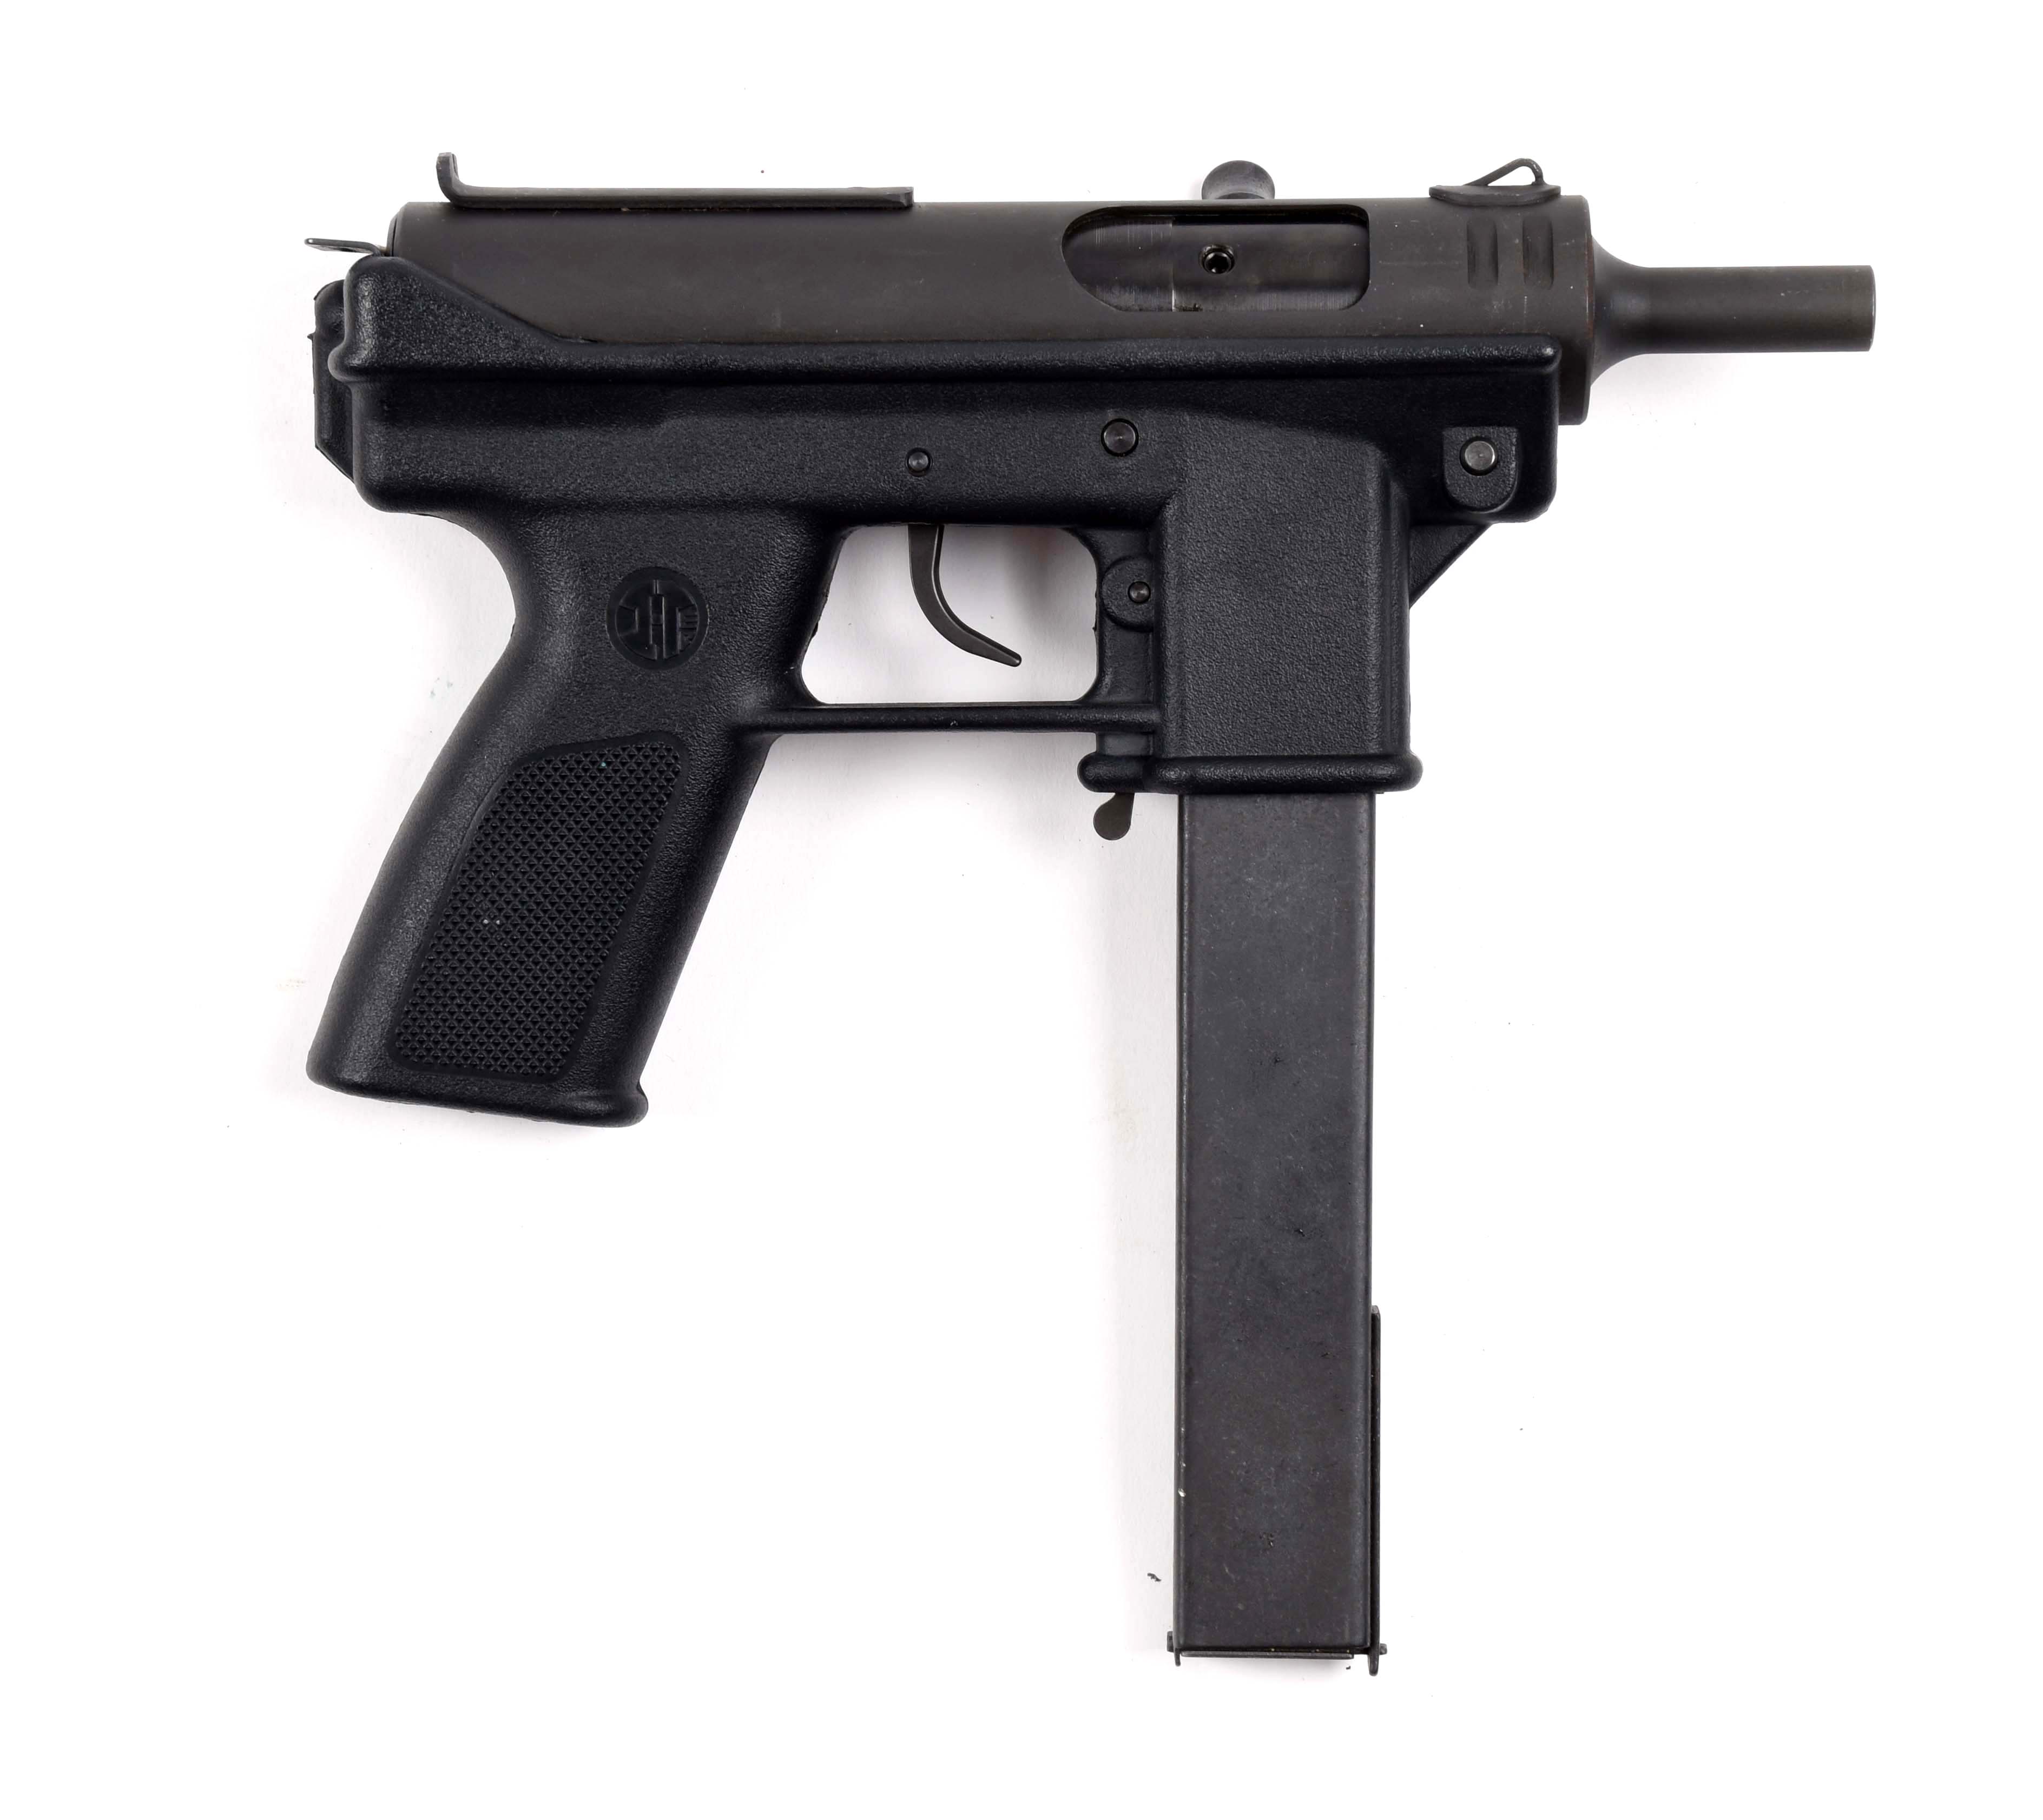 (M) intratec AB10 pistol in case. 